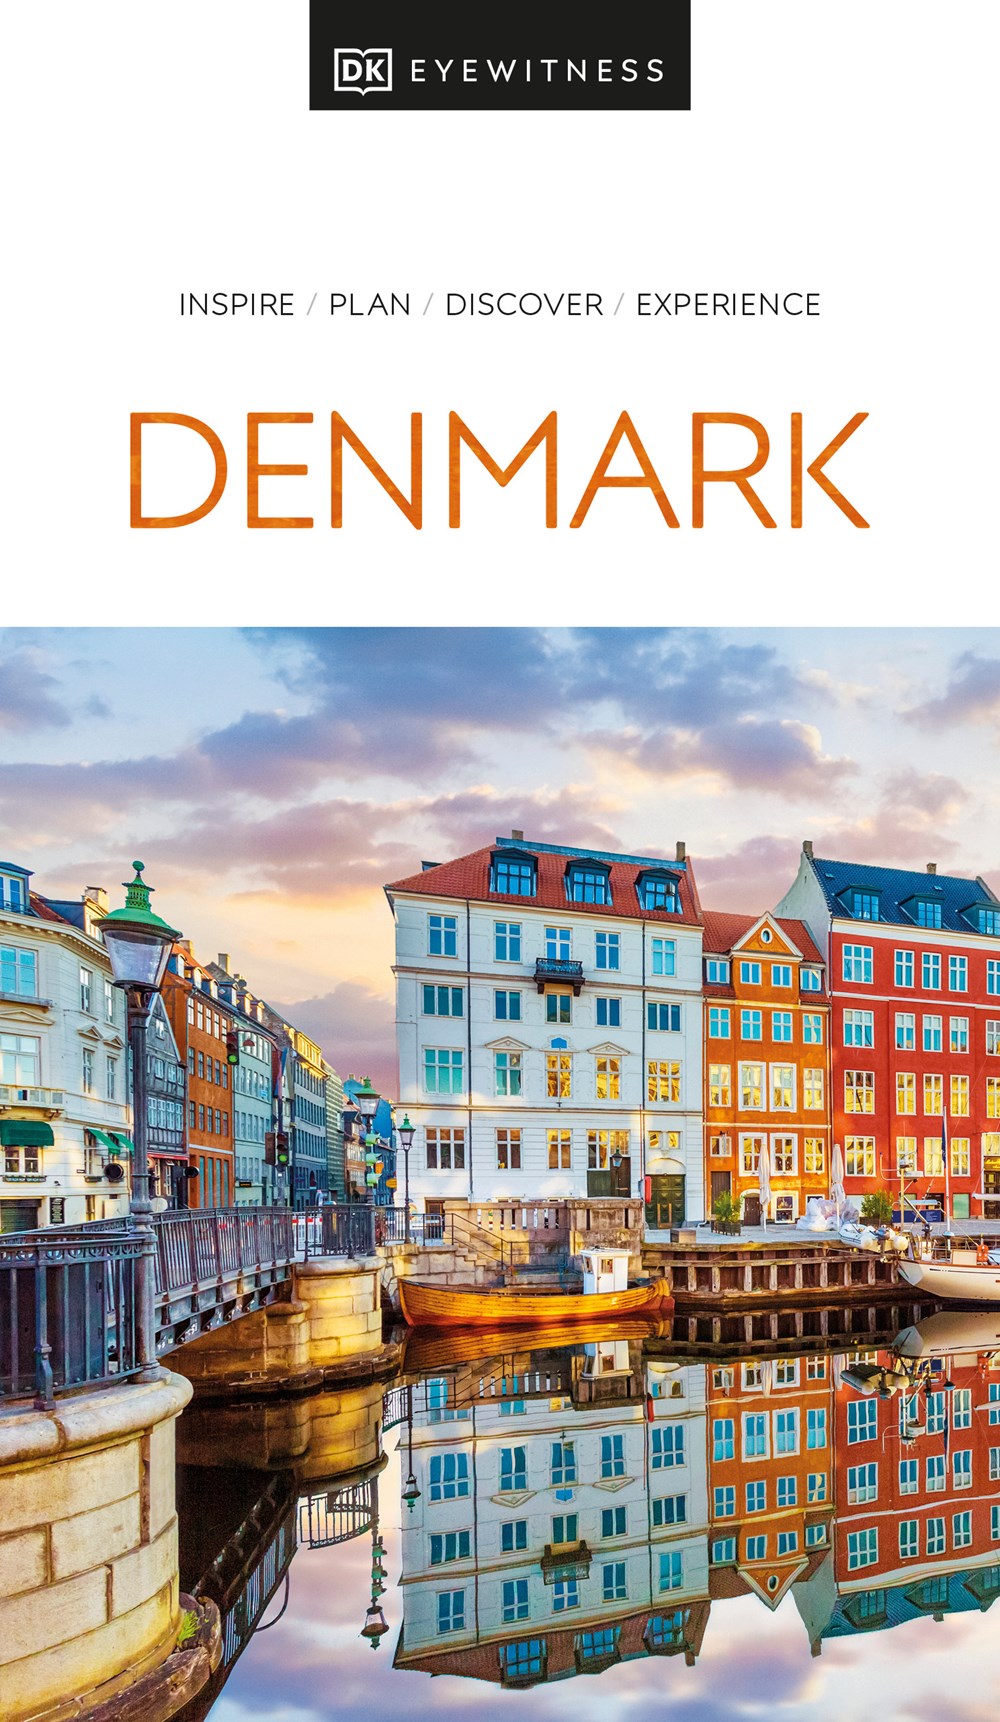 DK Eyewitness Denmark cover image